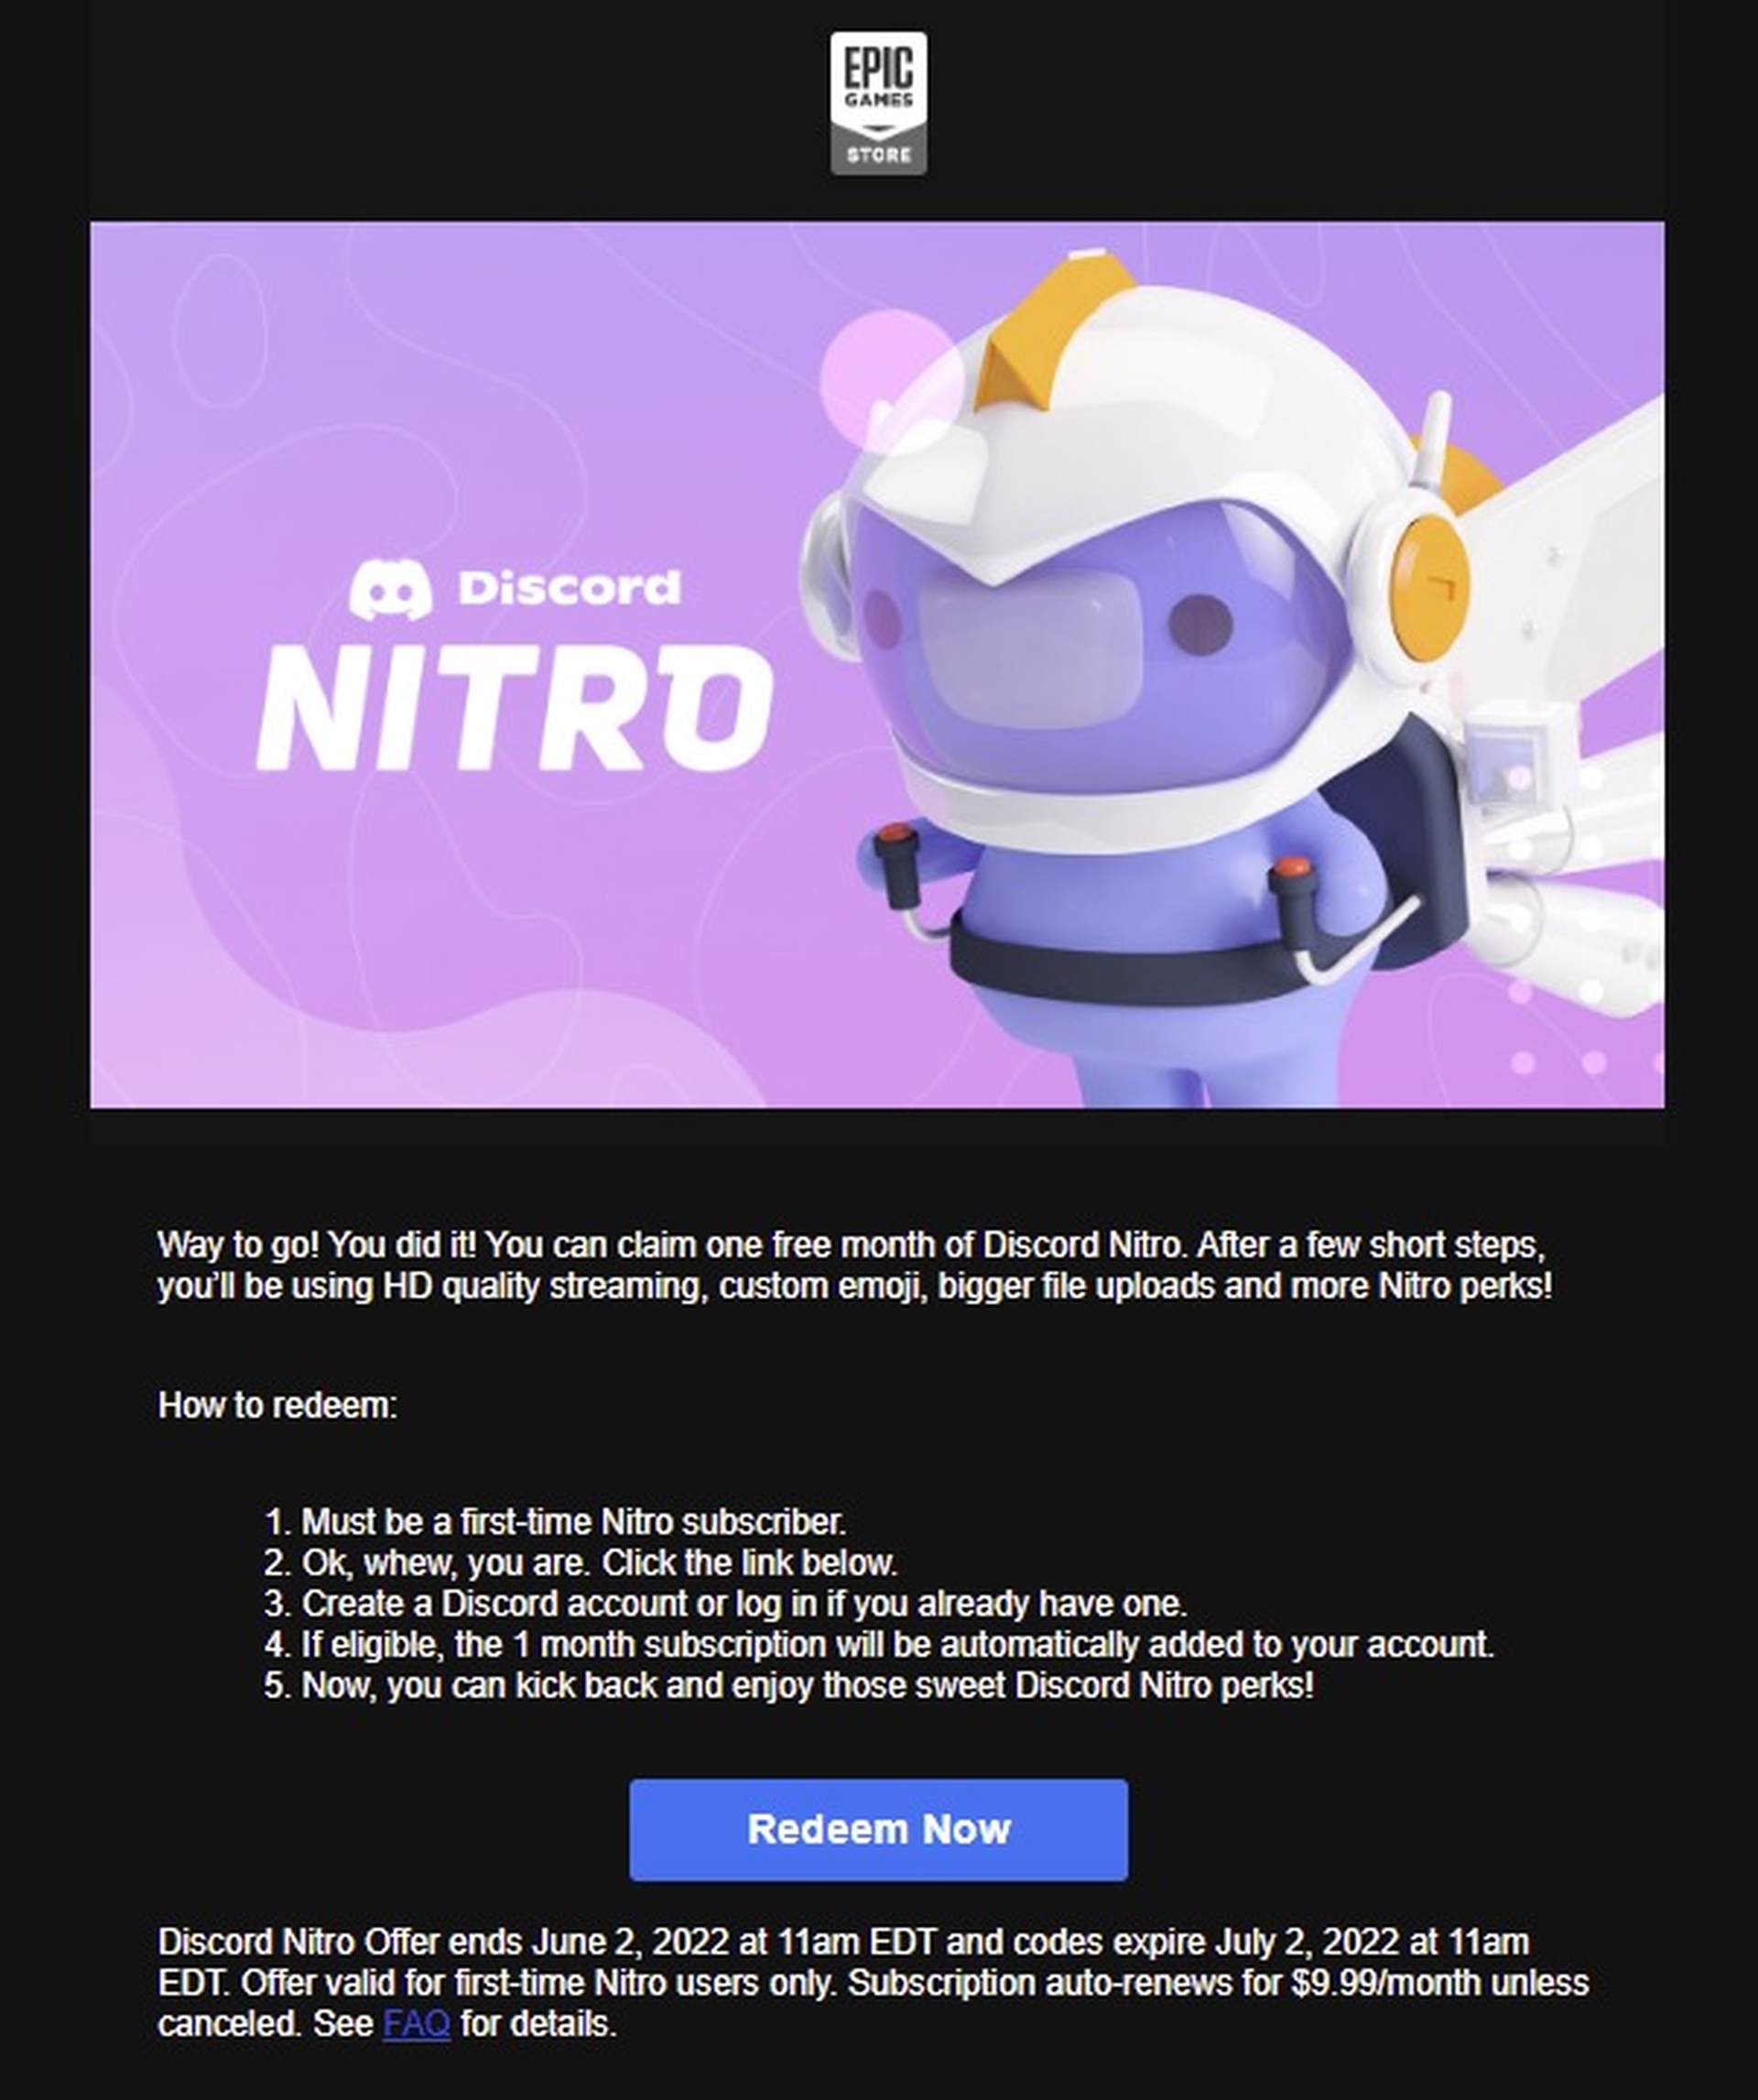 Dans cet article, nous allons expliquer comment réclamer Discord Nitro Epic Games, afin que vous puissiez profiter gratuitement des fonctionnalités fournies par Discord Nitro.